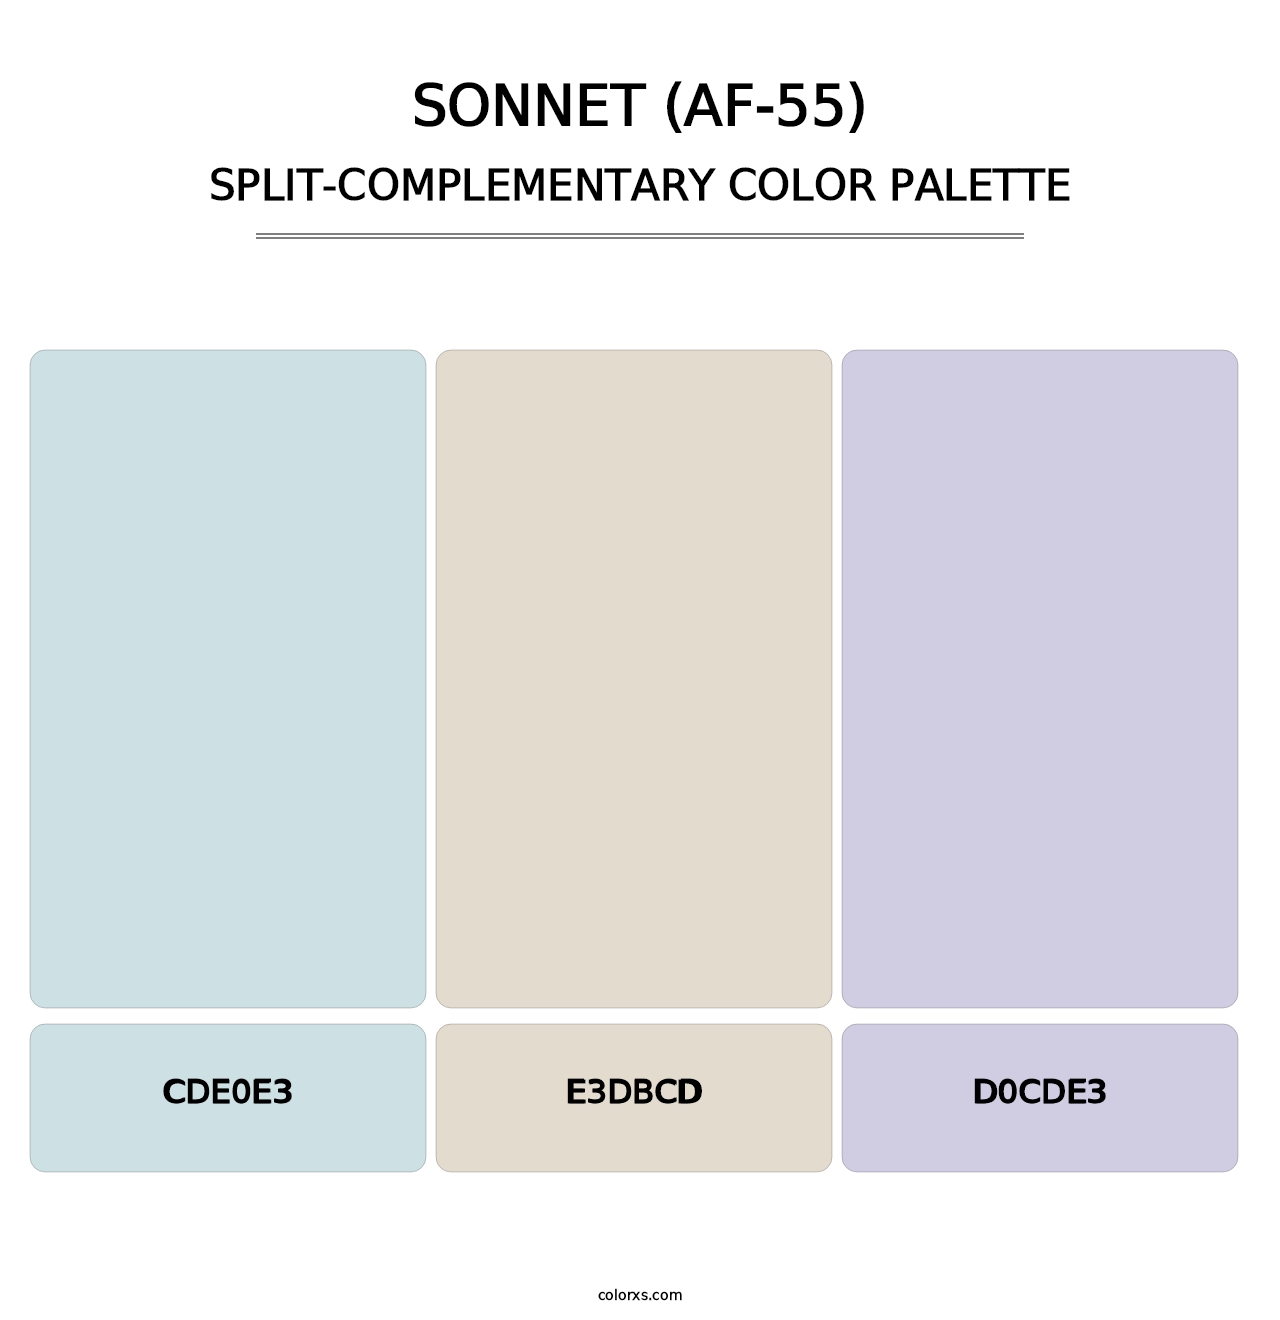 Sonnet (AF-55) - Split-Complementary Color Palette